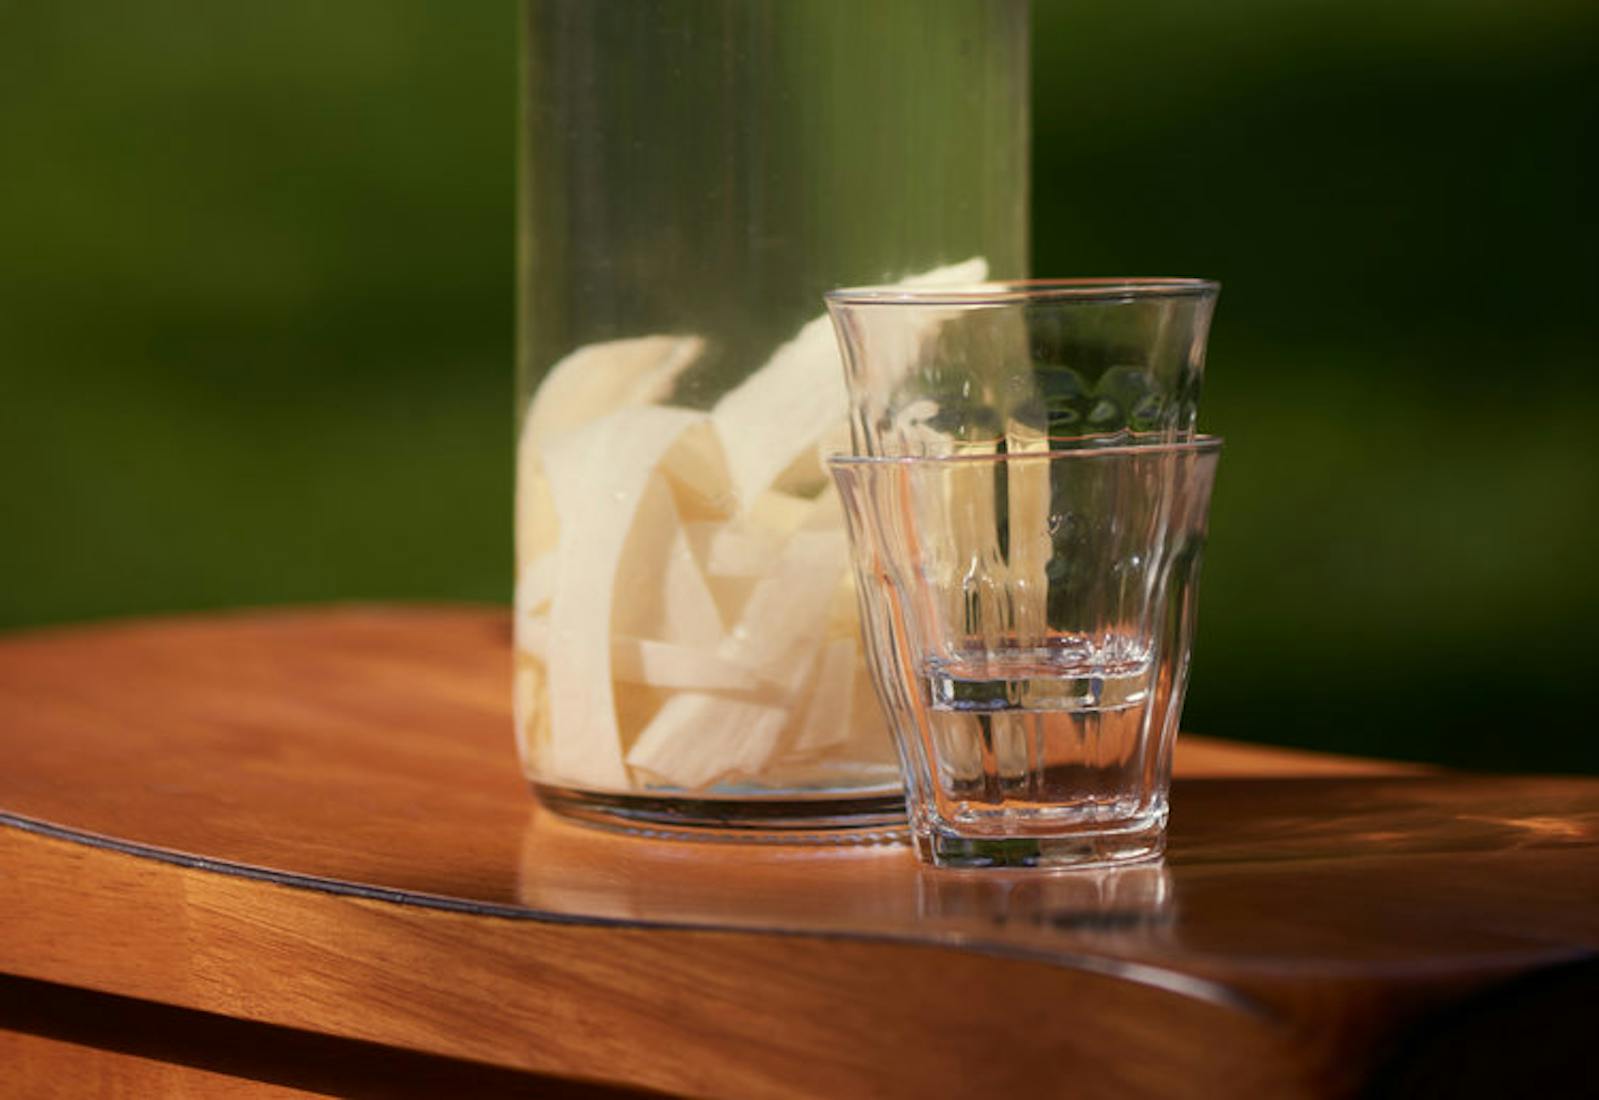 Horseradish vodka in bottle on wooden table.